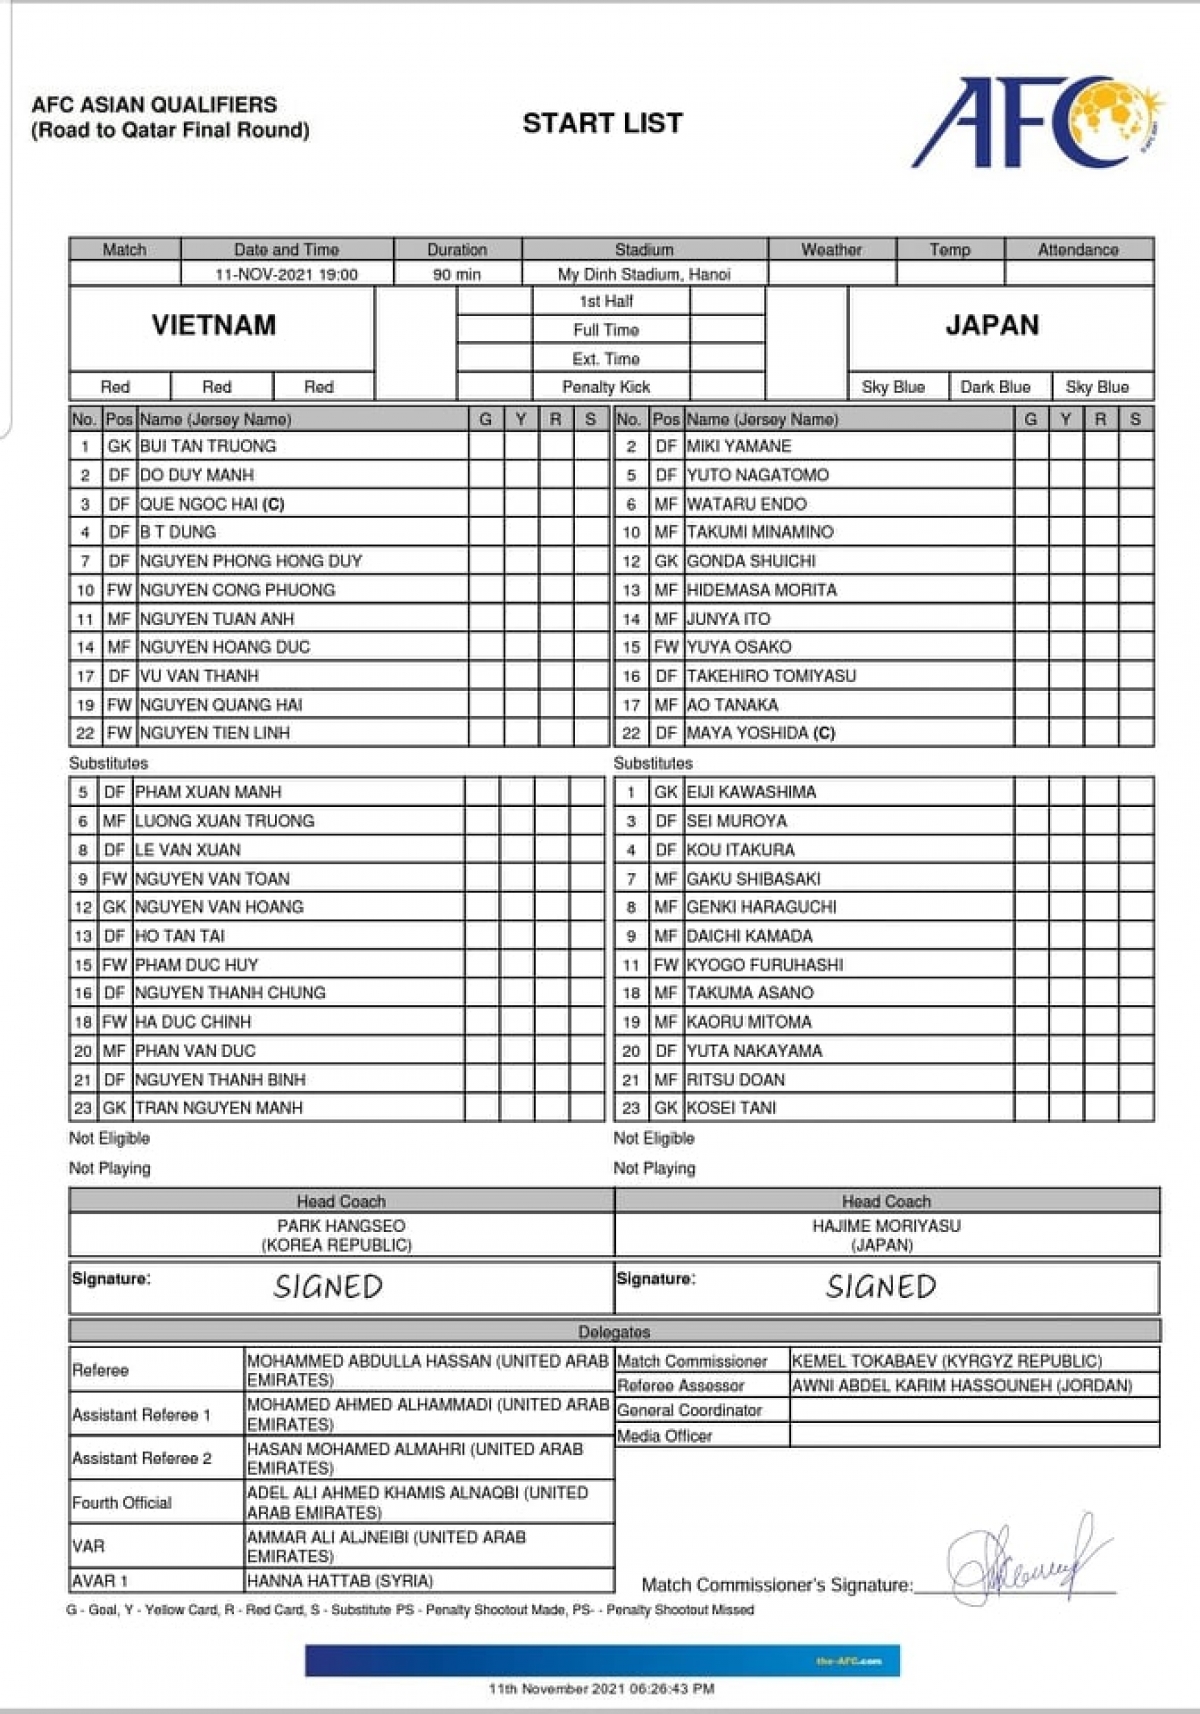 Danh sách đăng ký của 2 đội tuyển Việt Nam và Nhật Bản